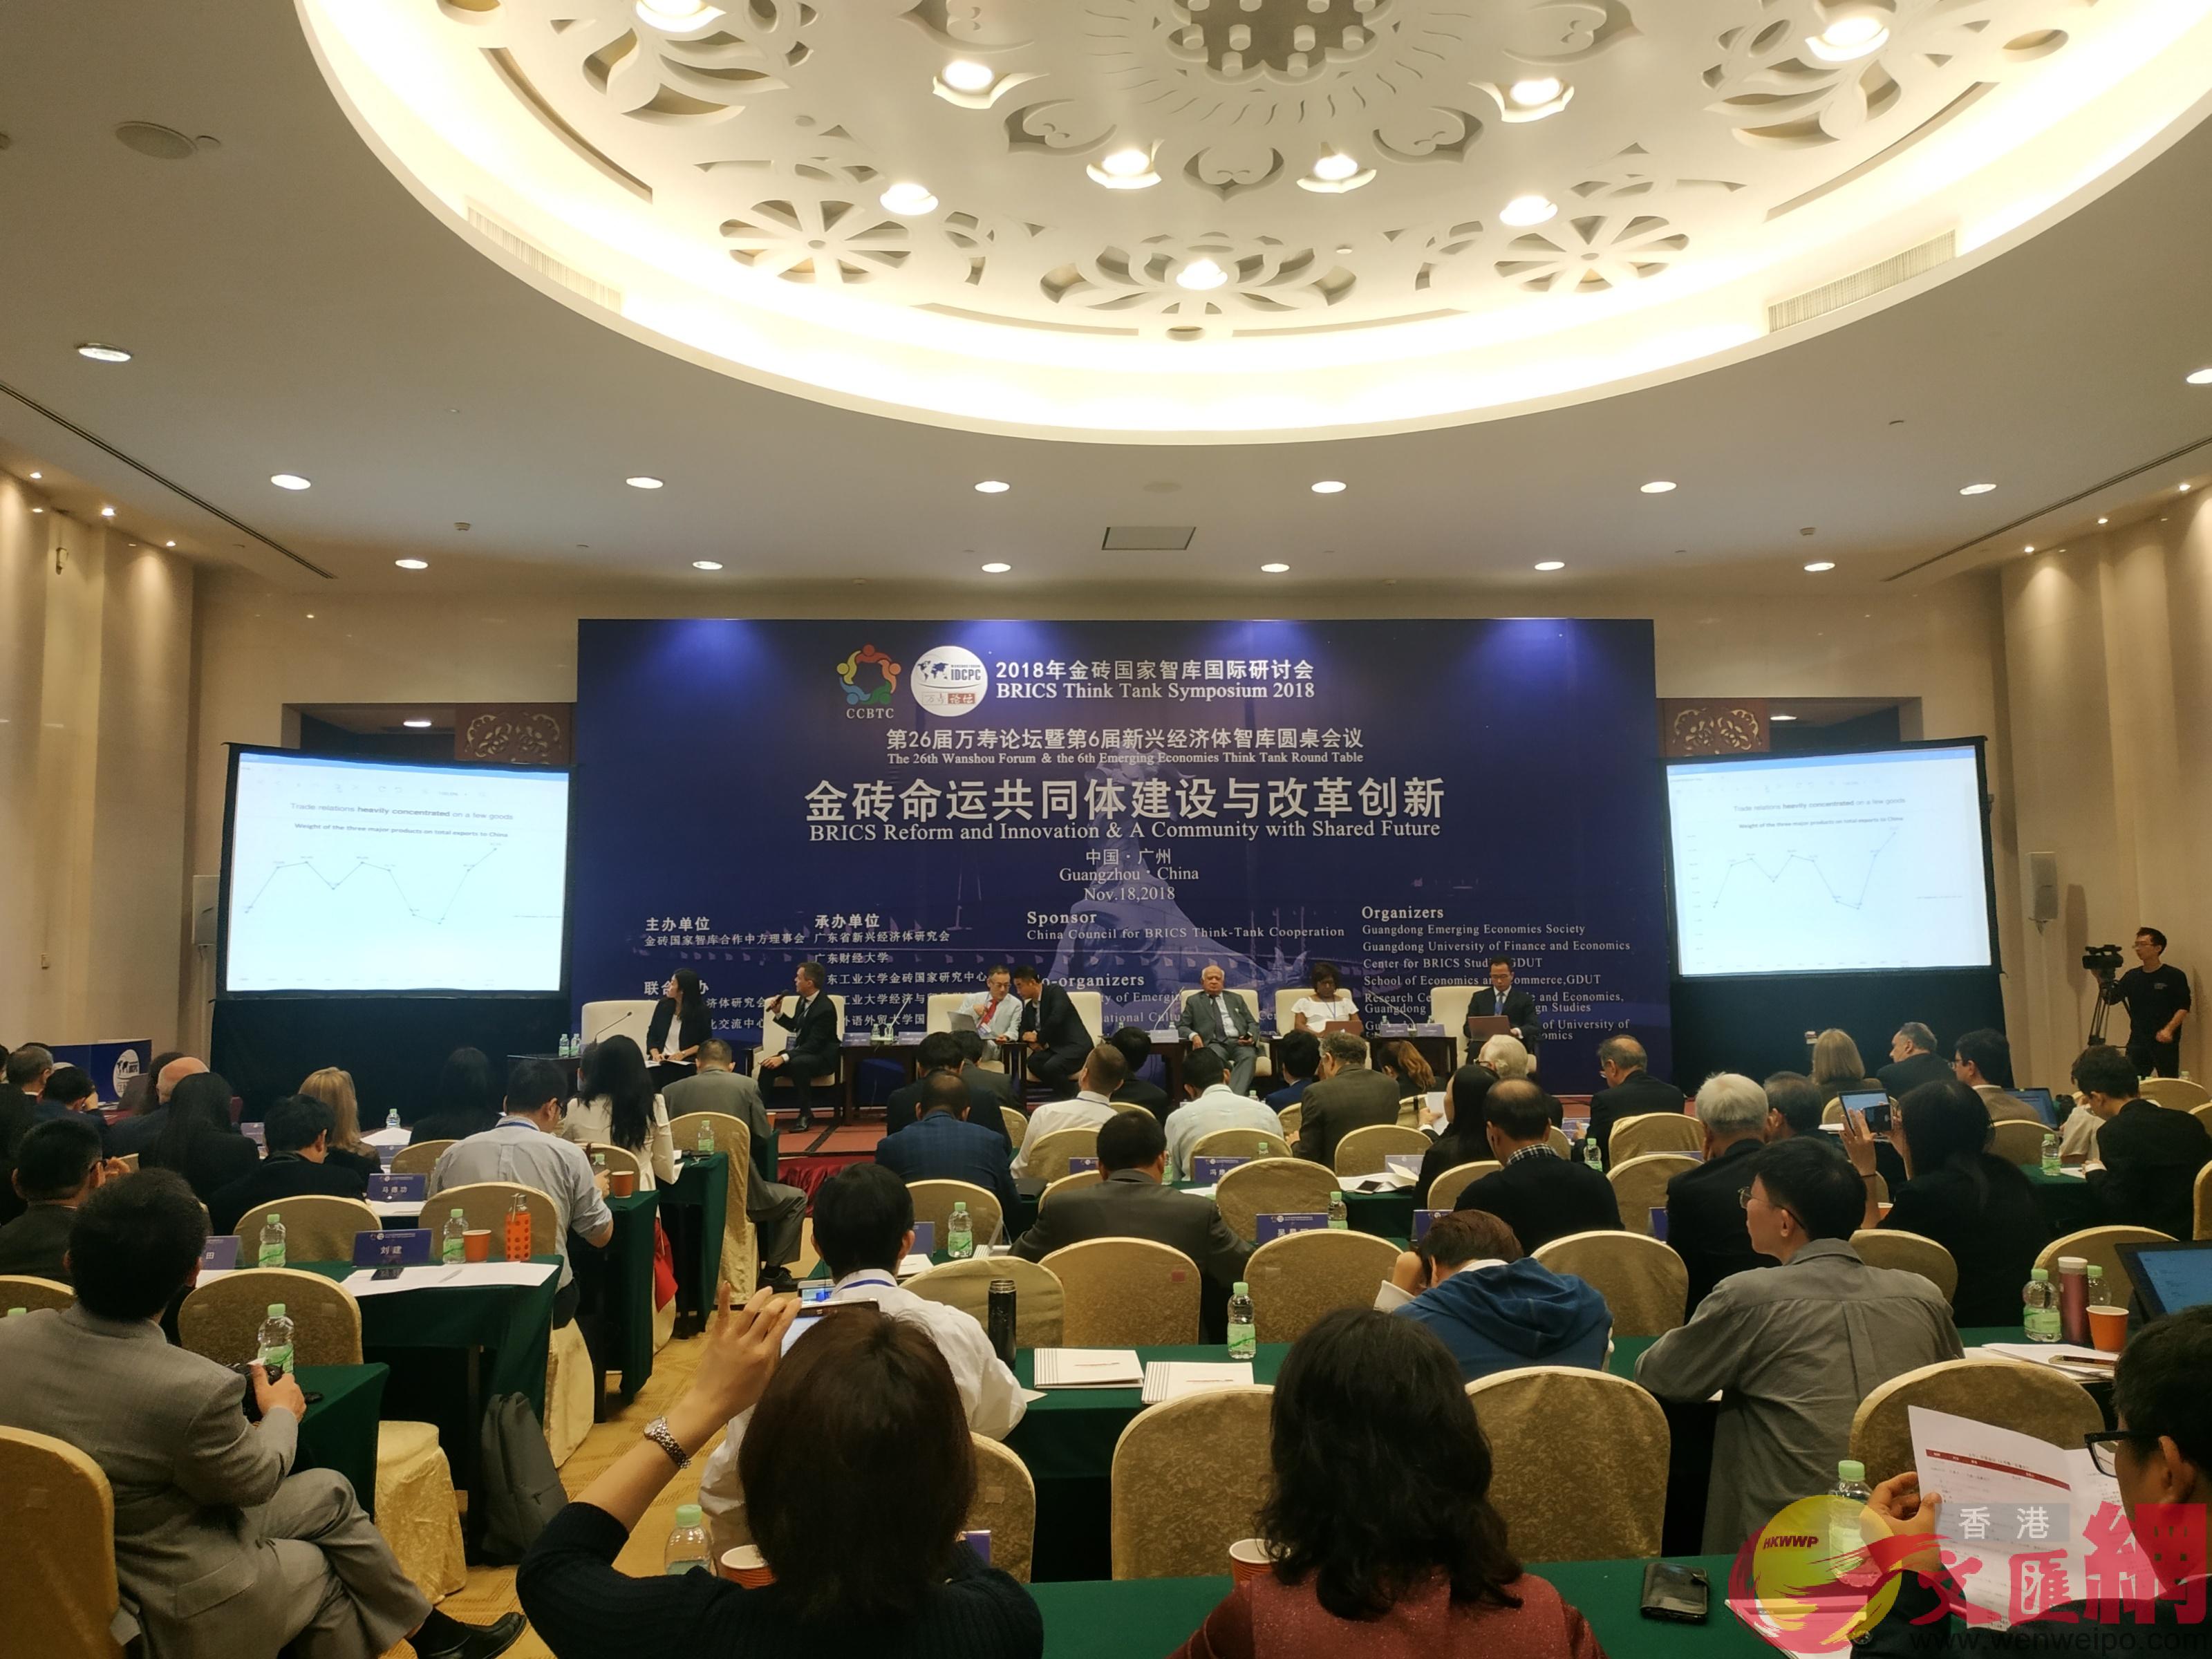 2018年金磚國家智庫國際研討會在廣州舉行C]盧靜怡攝^